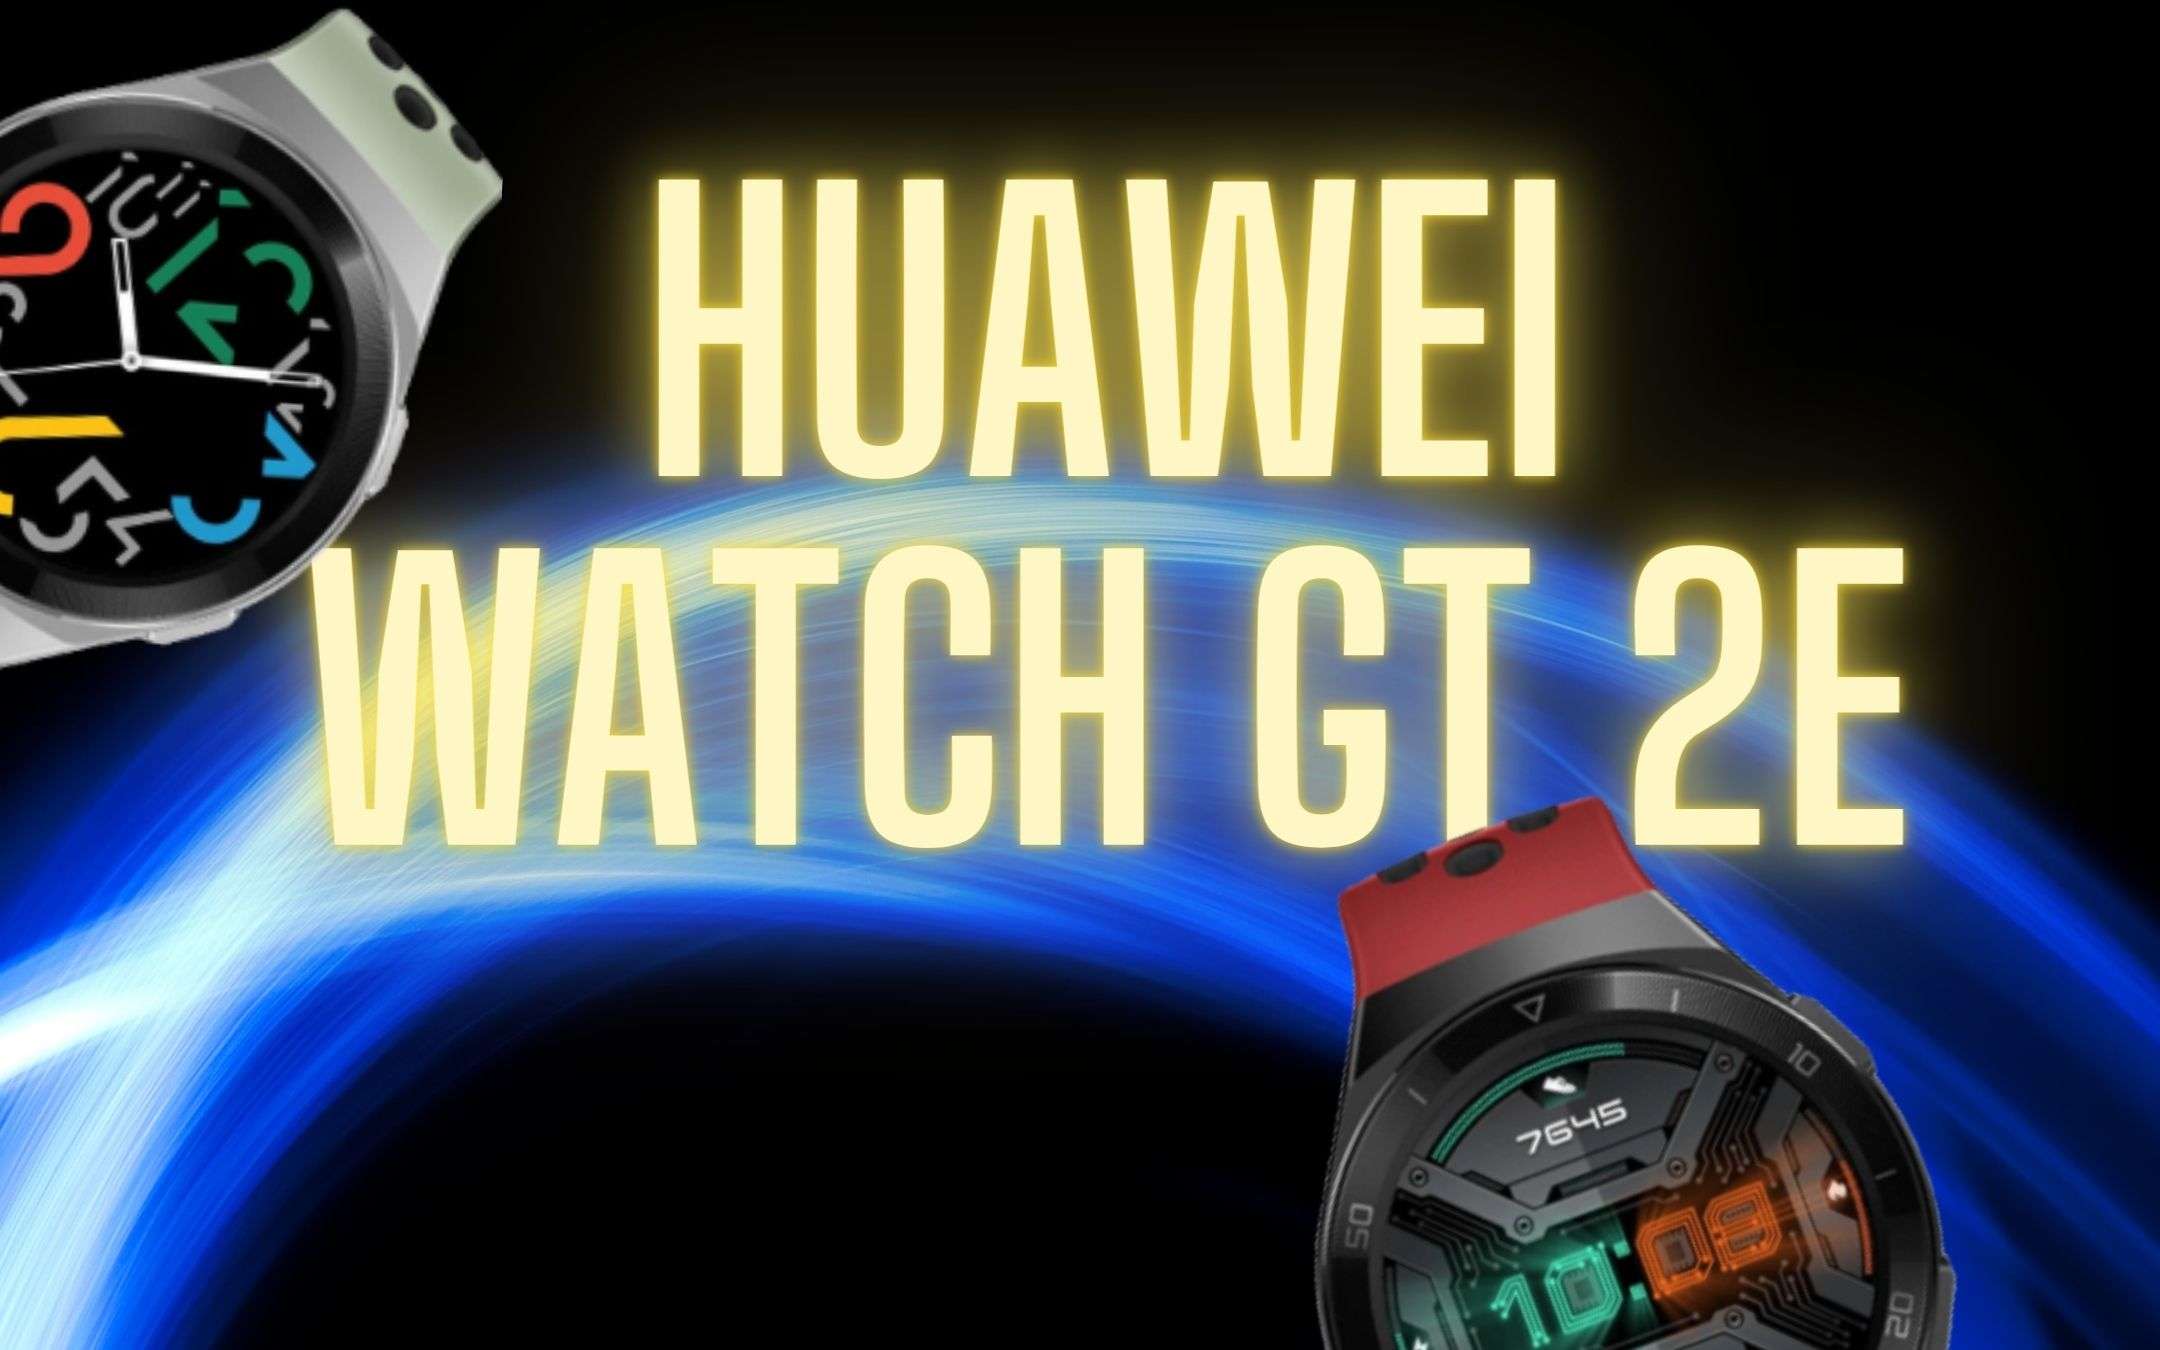 Il miglior smartwatch? Huawei GT2e a 99 euro!